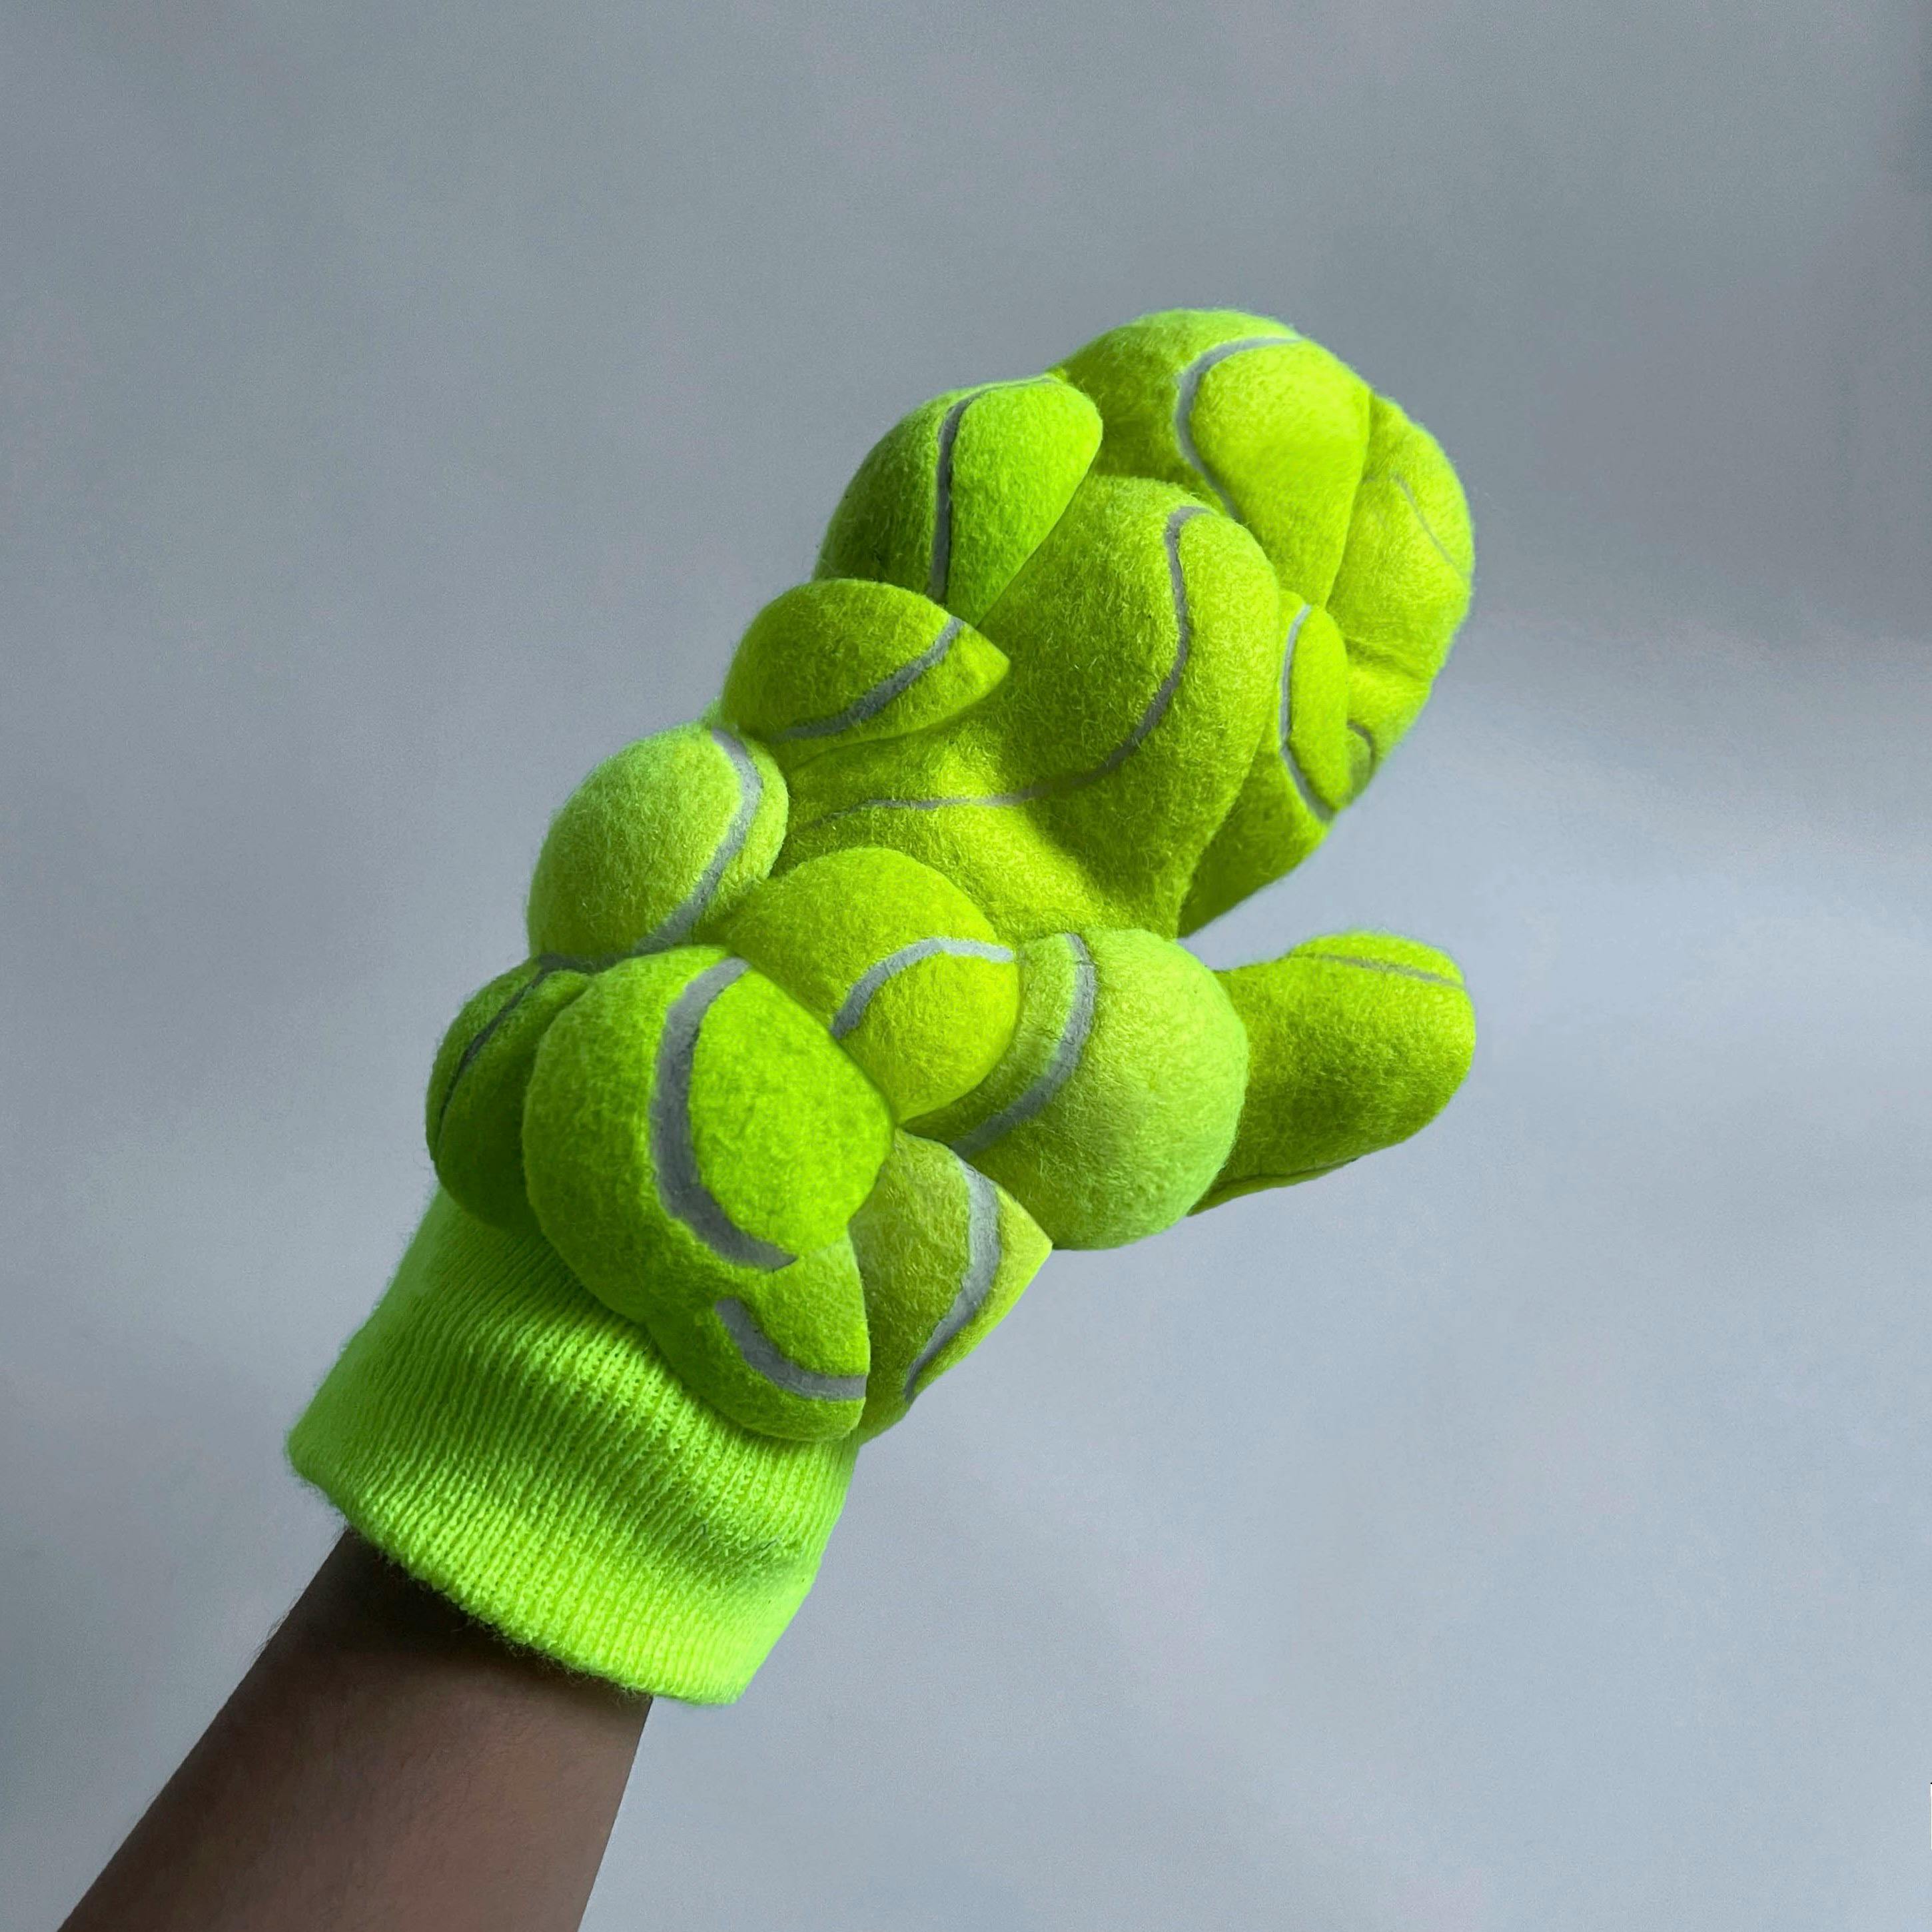 glove made from tennis balls